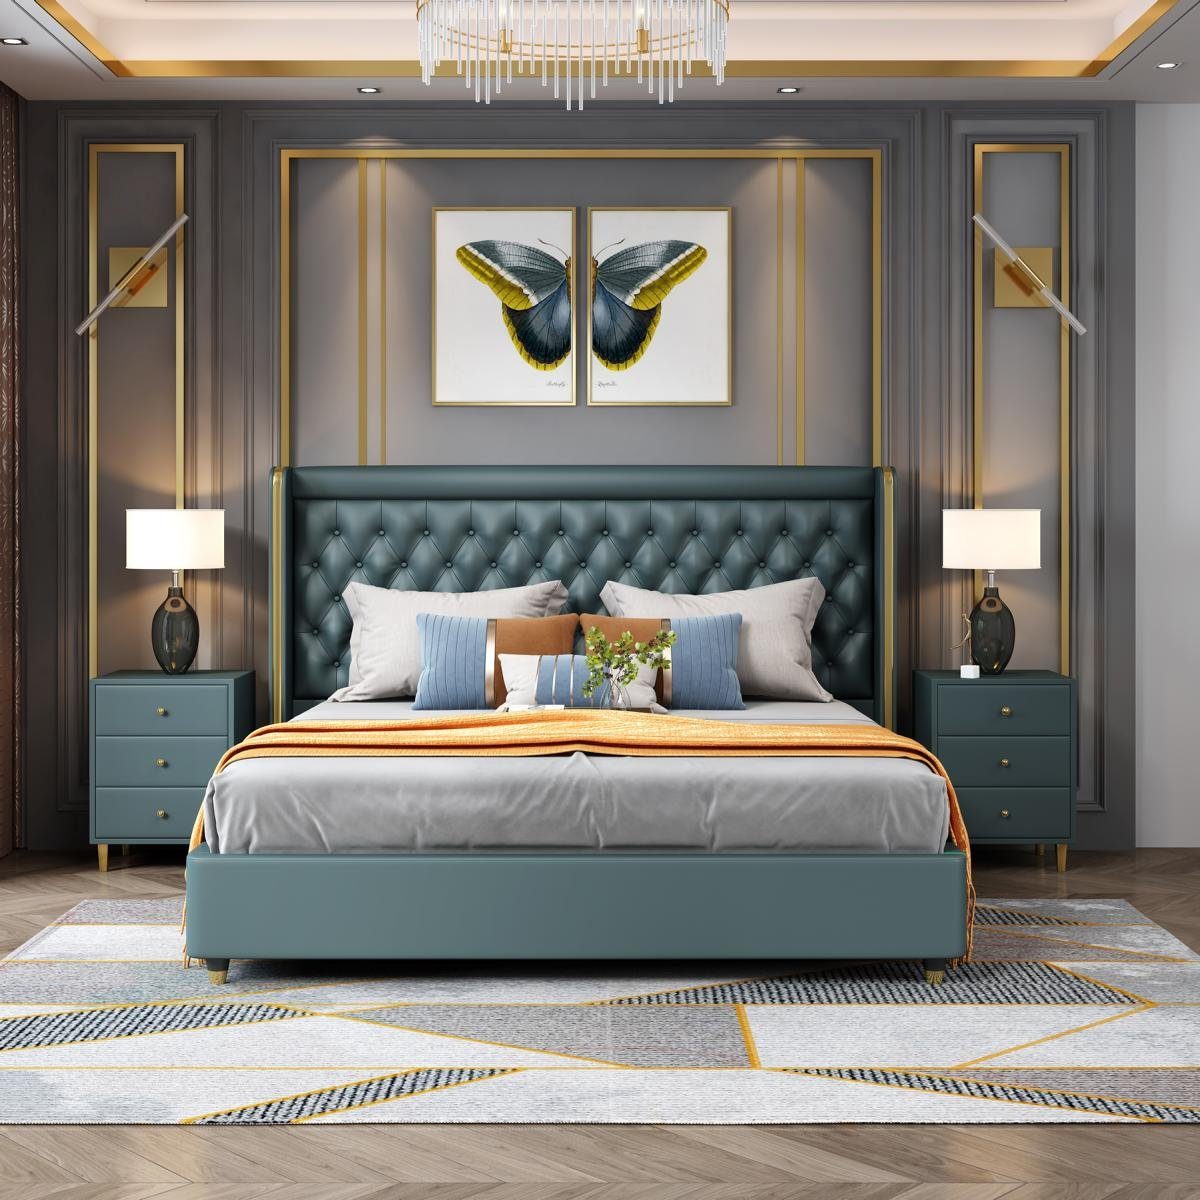 Stil Betten Grün Bett Doppelbett JVmoebel Landhaus Holz Klassisches Echtes Bett,